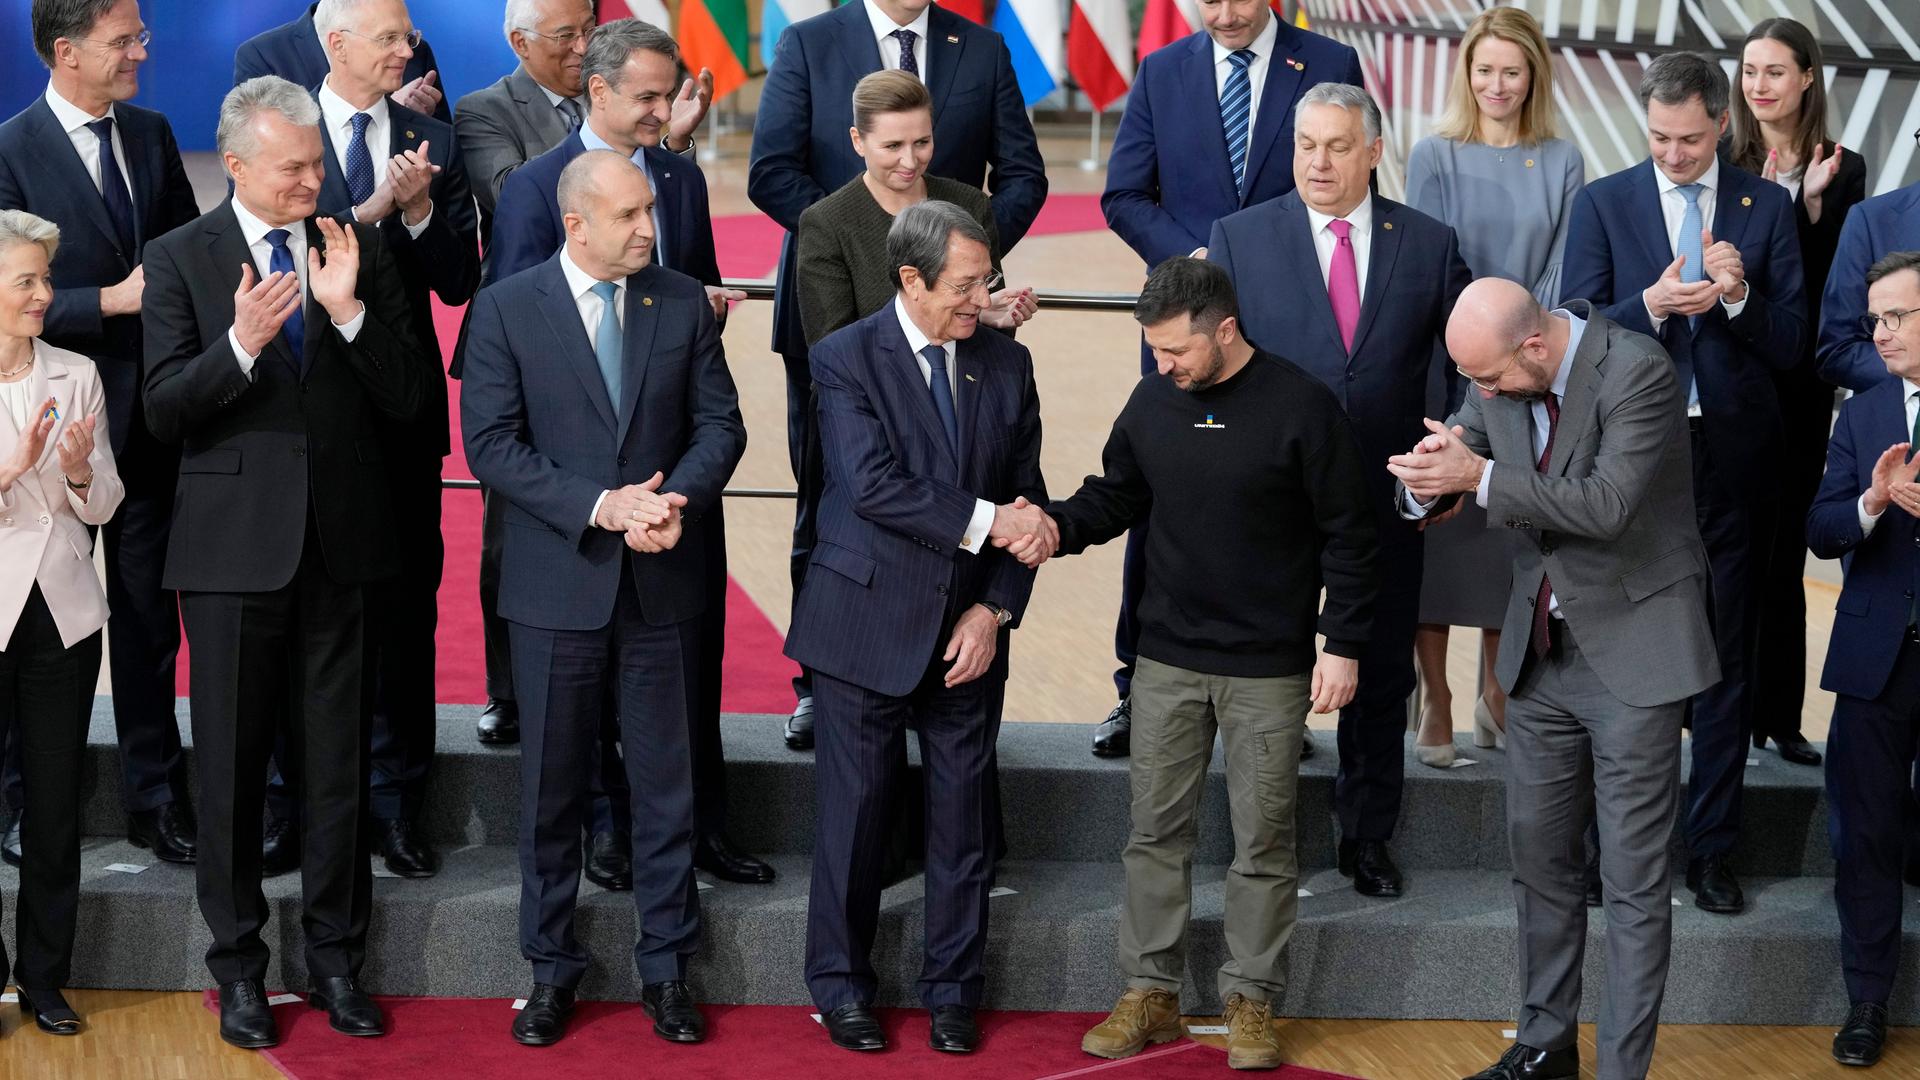 Brüssel: Wolodymyr Selenskyj (2. v.l), Präsident der Ukraine, schüttelt Nicos Anastasiades (3. v.l), Präsident von Zypern, die Hand, während sie zusammen mit den Europäischen Staats- und Regierungschefs für ein Gruppenfoto zusammenstehen. 